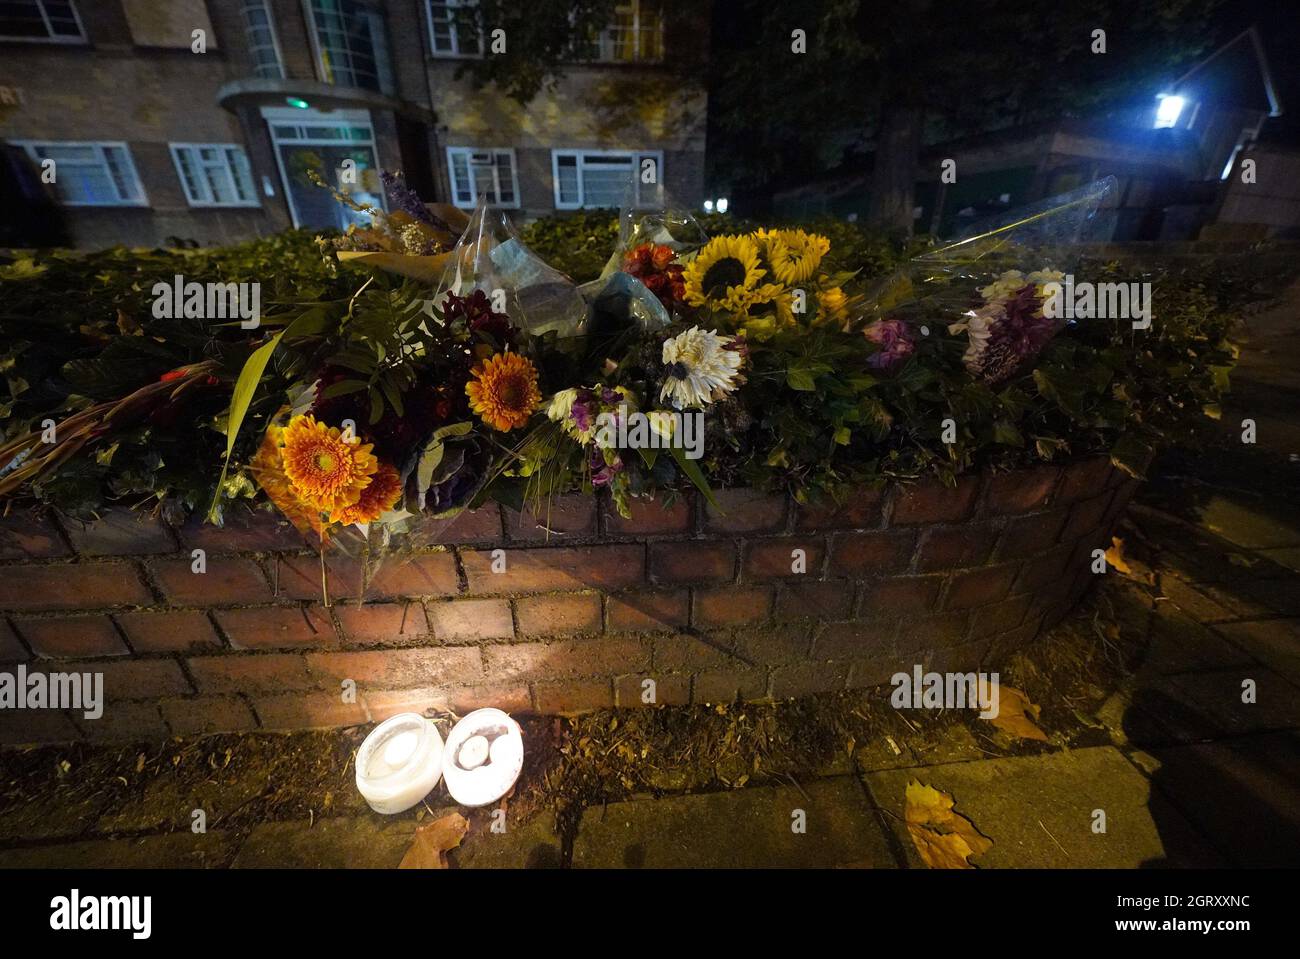 Los homenajes florales a Sarah Everard se dejan en Poynders Road en Clapham, al sur de Londres, cerca de donde Sarah Everard fue secuestrada de la calle al ser detenida falsamente por el oficial de policía Wayne Couzens en marzo. Fecha de la foto: Viernes 1 de octubre de 2021. Foto de stock